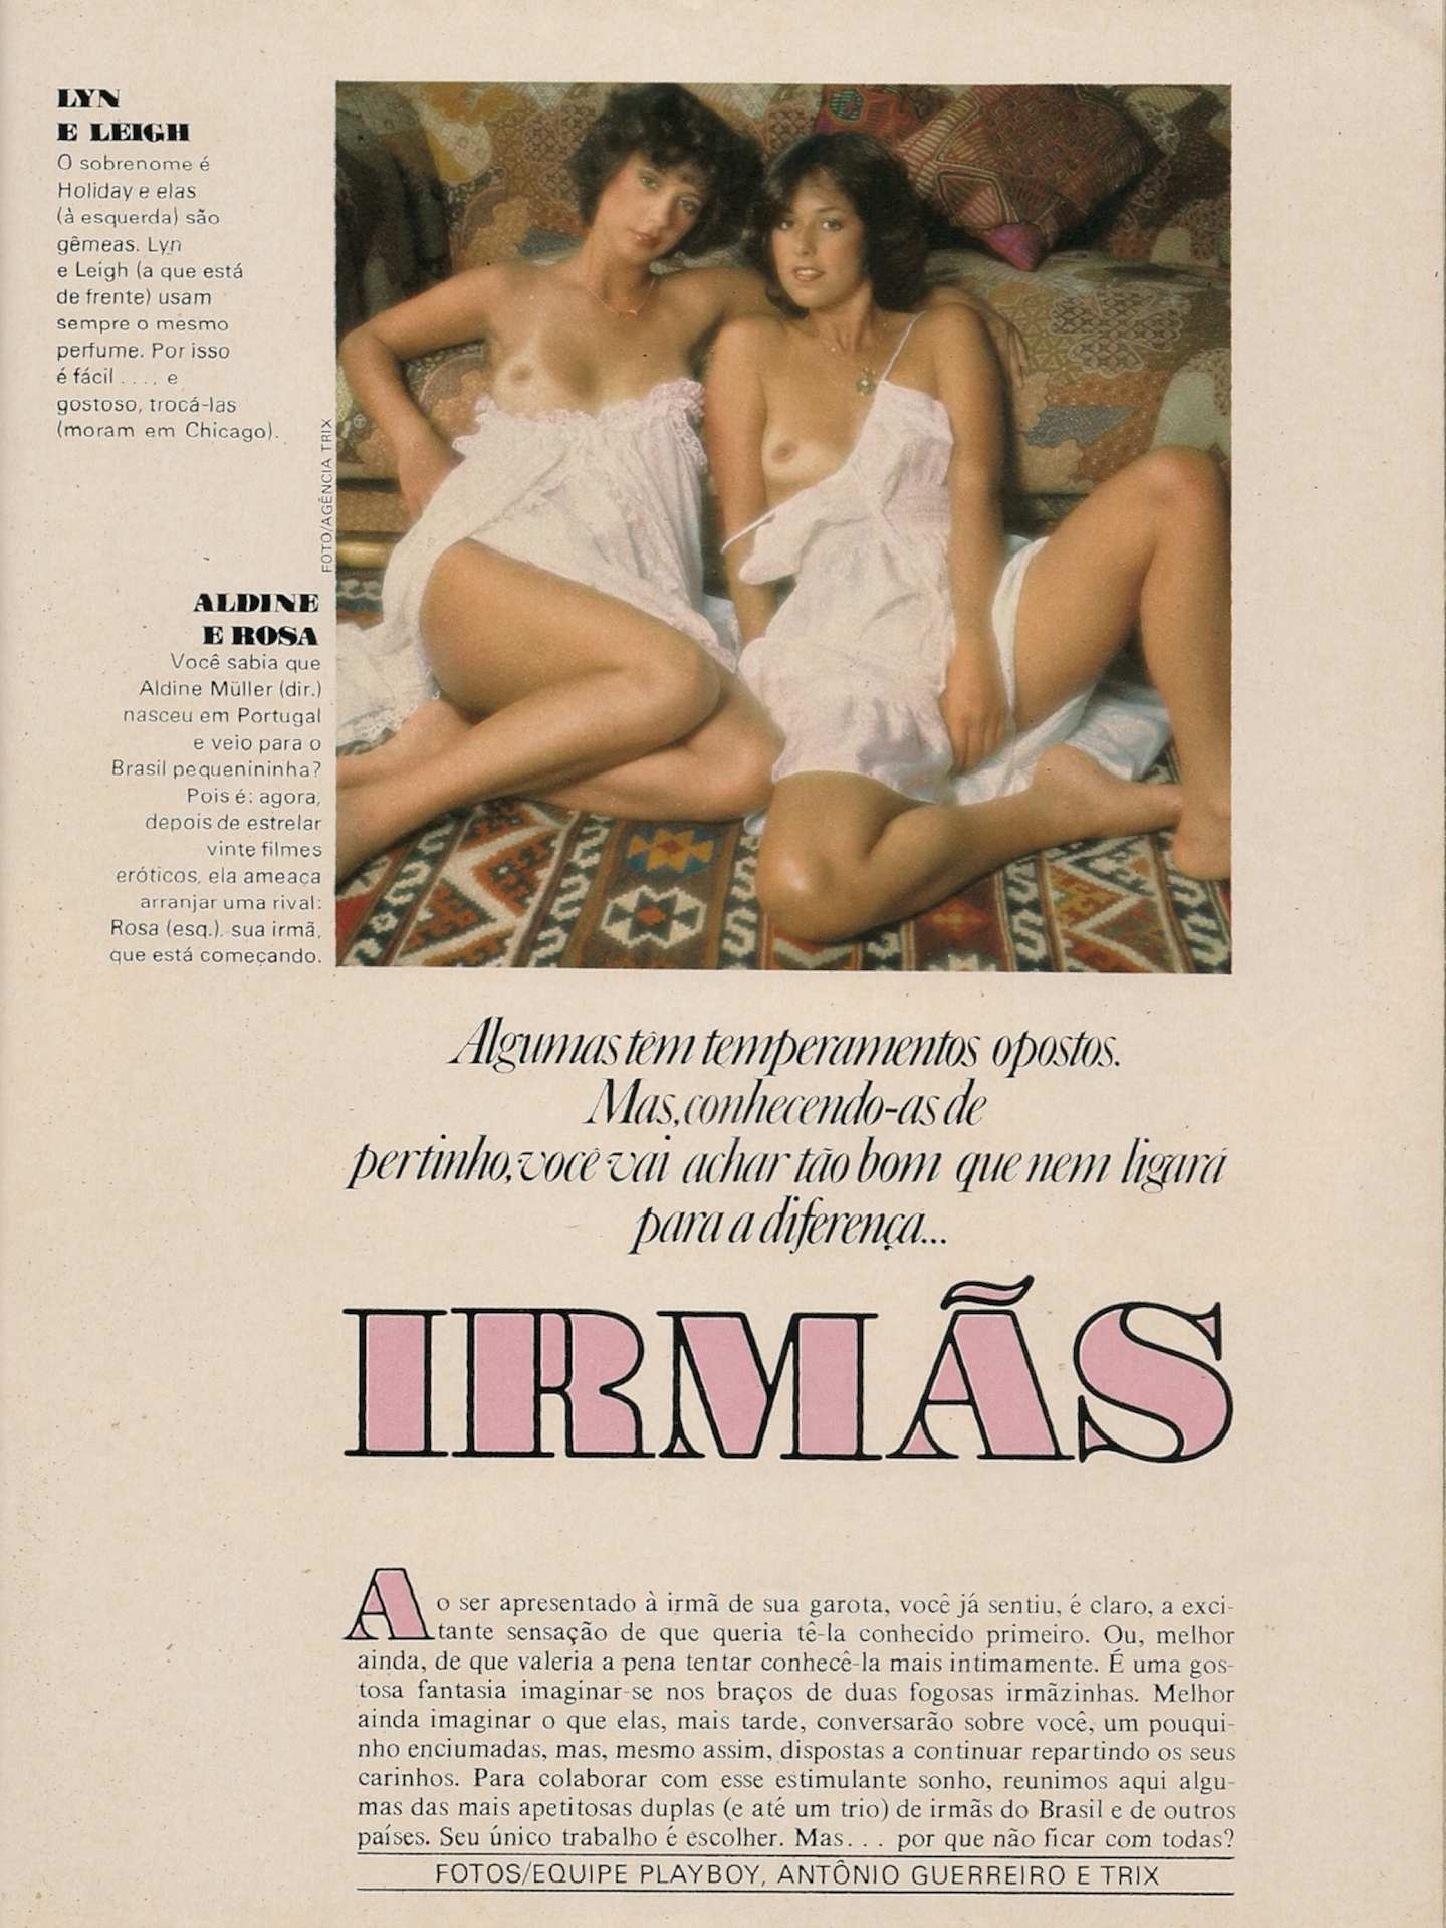 Playboy Junho de 1978